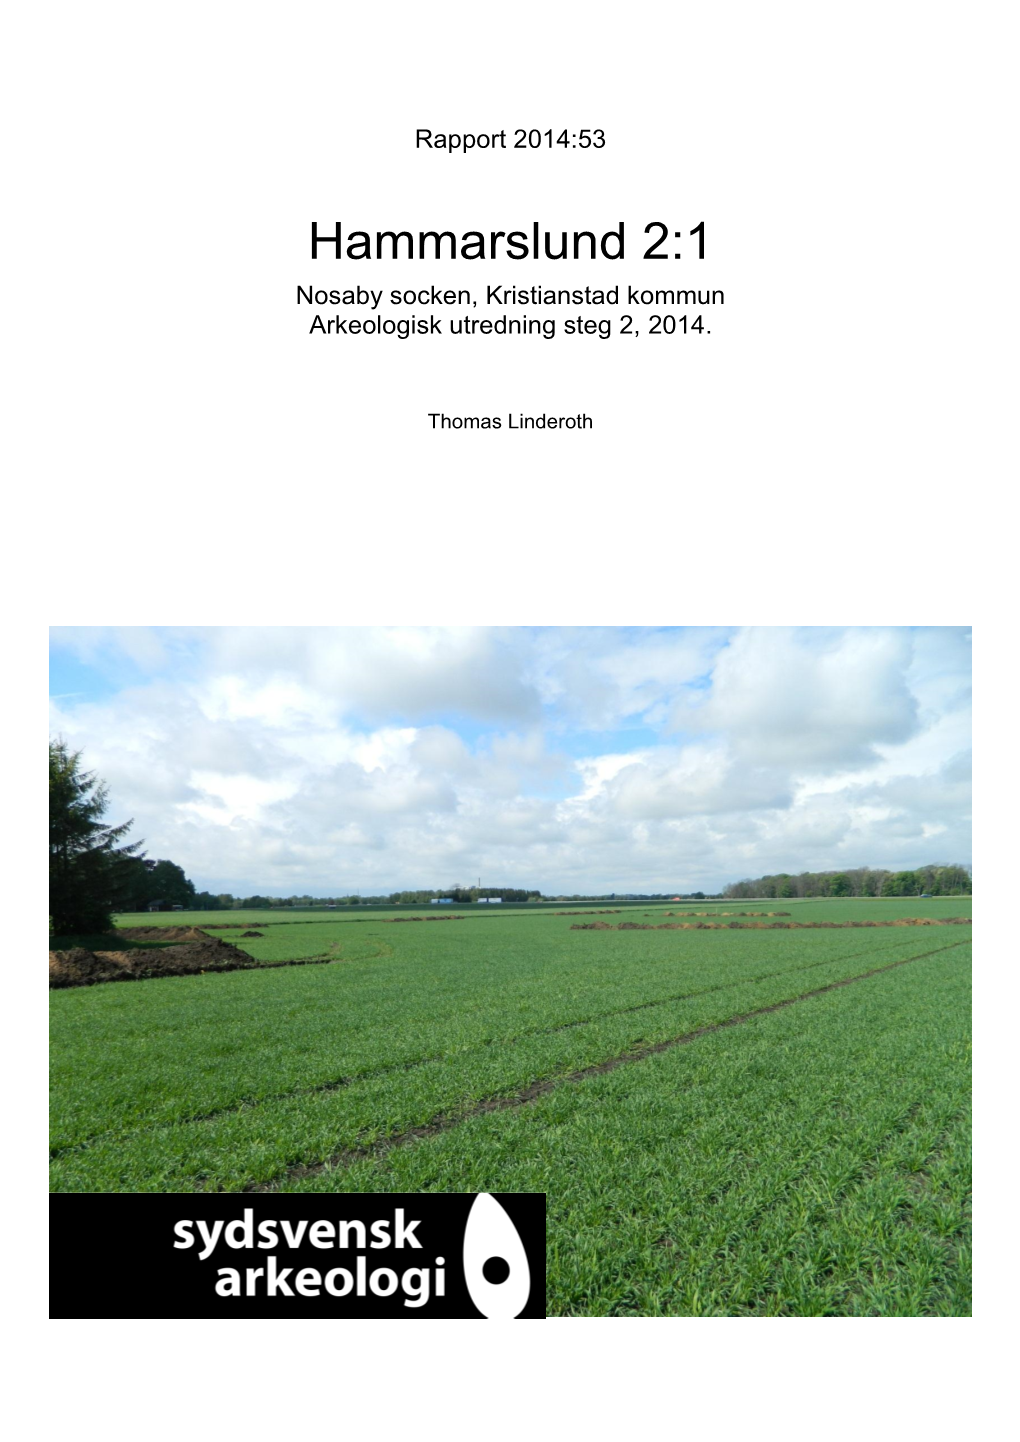 Hammarslund 2:1 Nosaby Socken, Kristianstad Kommun Arkeologisk Utredning Steg 2, 2014